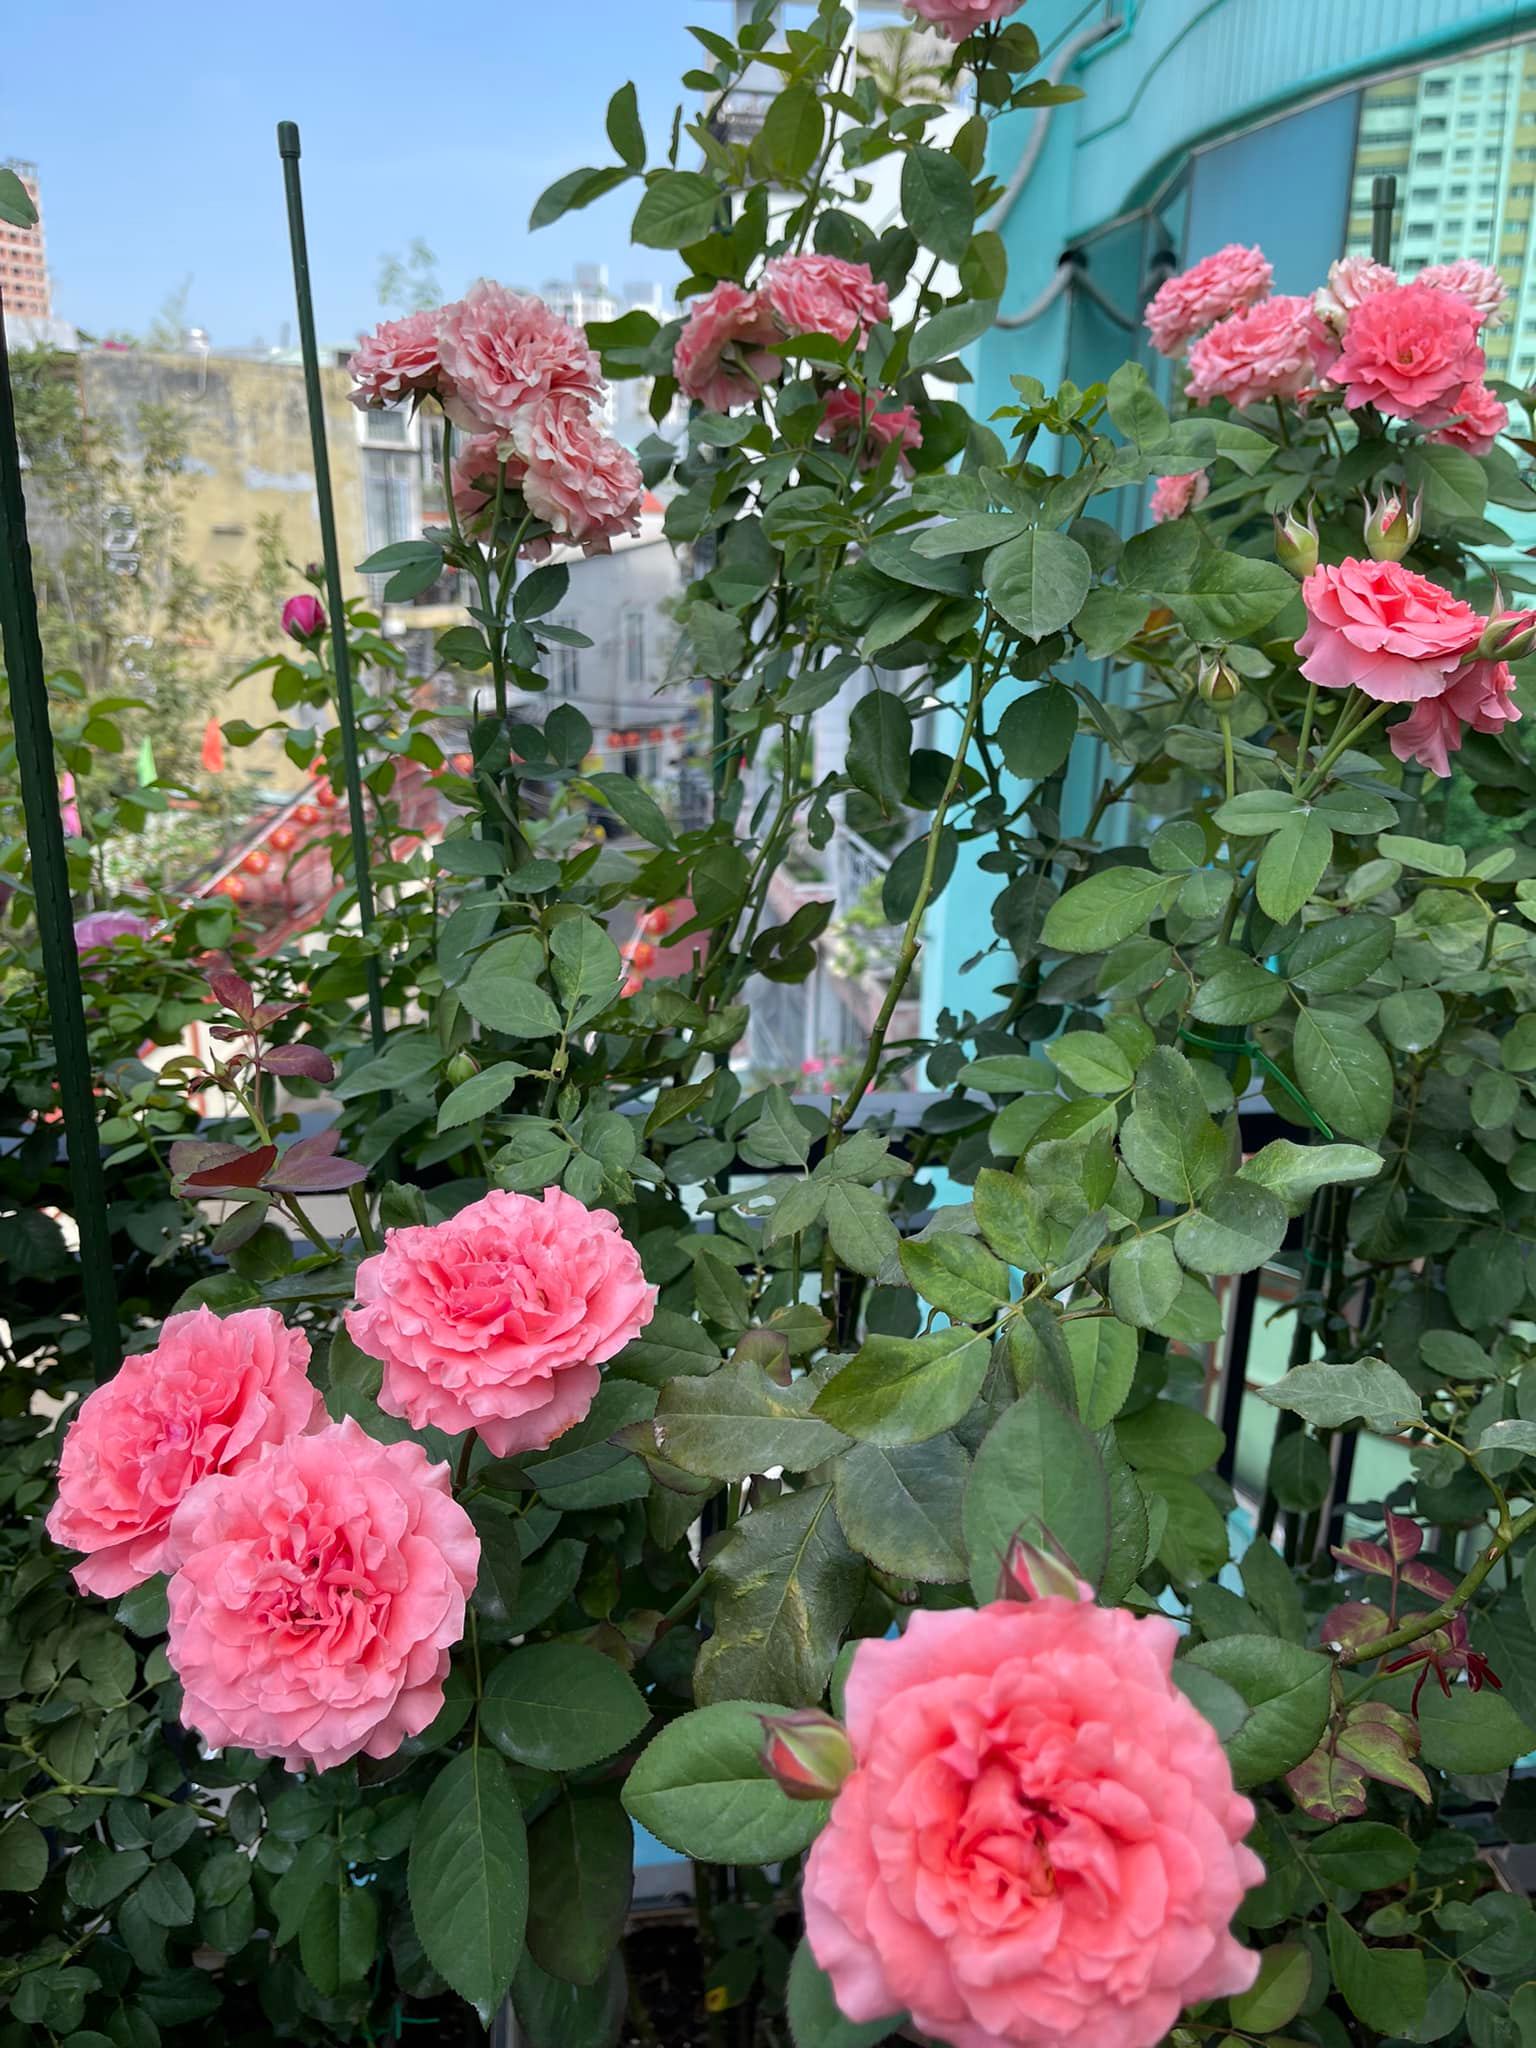 Khu vườn hoa hồng đẹp ngây ngất trên sân thượng ở TP HCM - Ảnh 10.